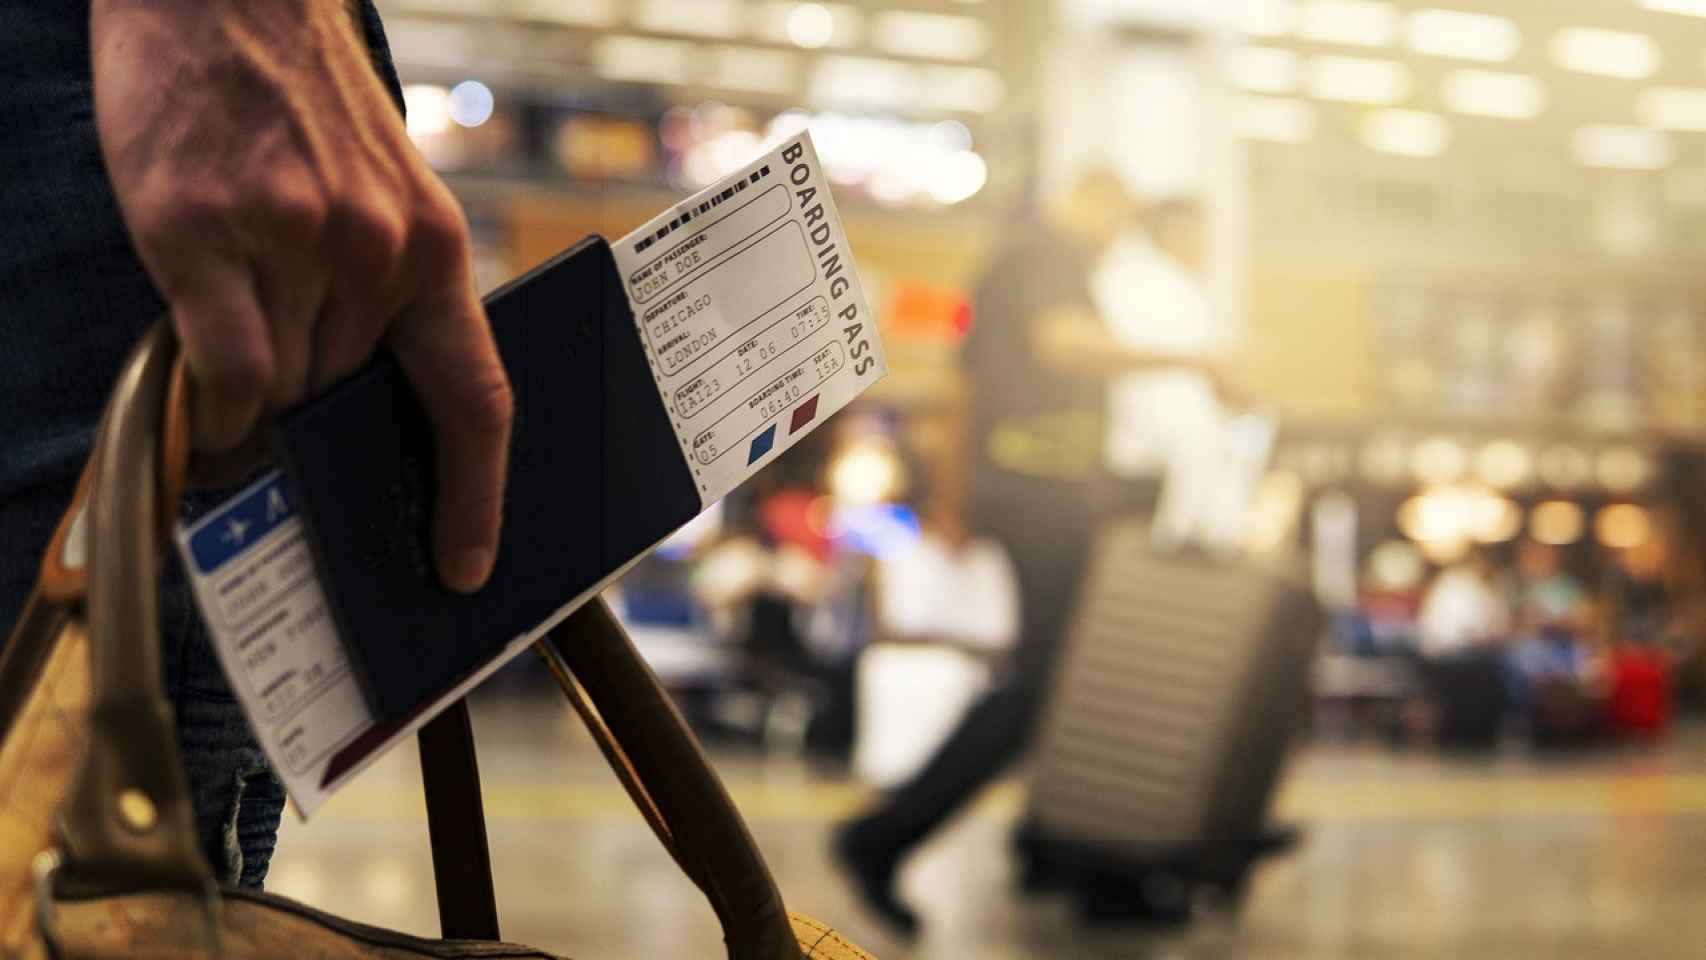 Una persona con su tarjeta de embarque en un aeropuerto.